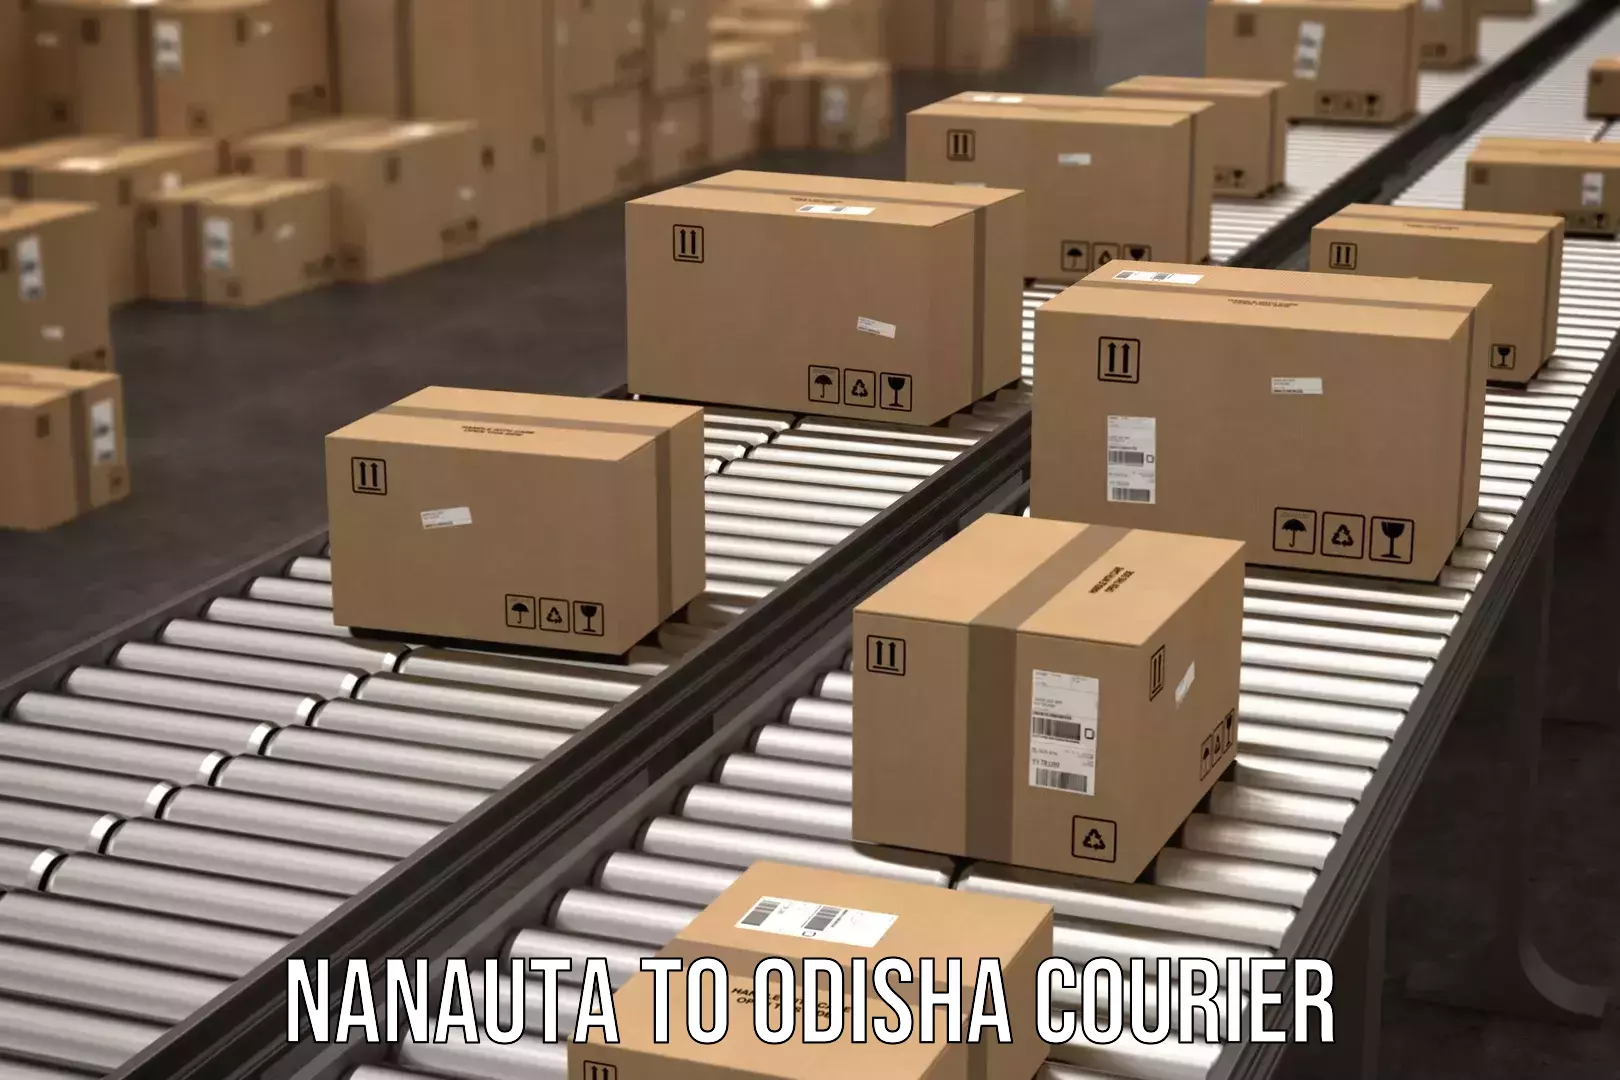 Affordable shipping solutions Nanauta to Chandbali